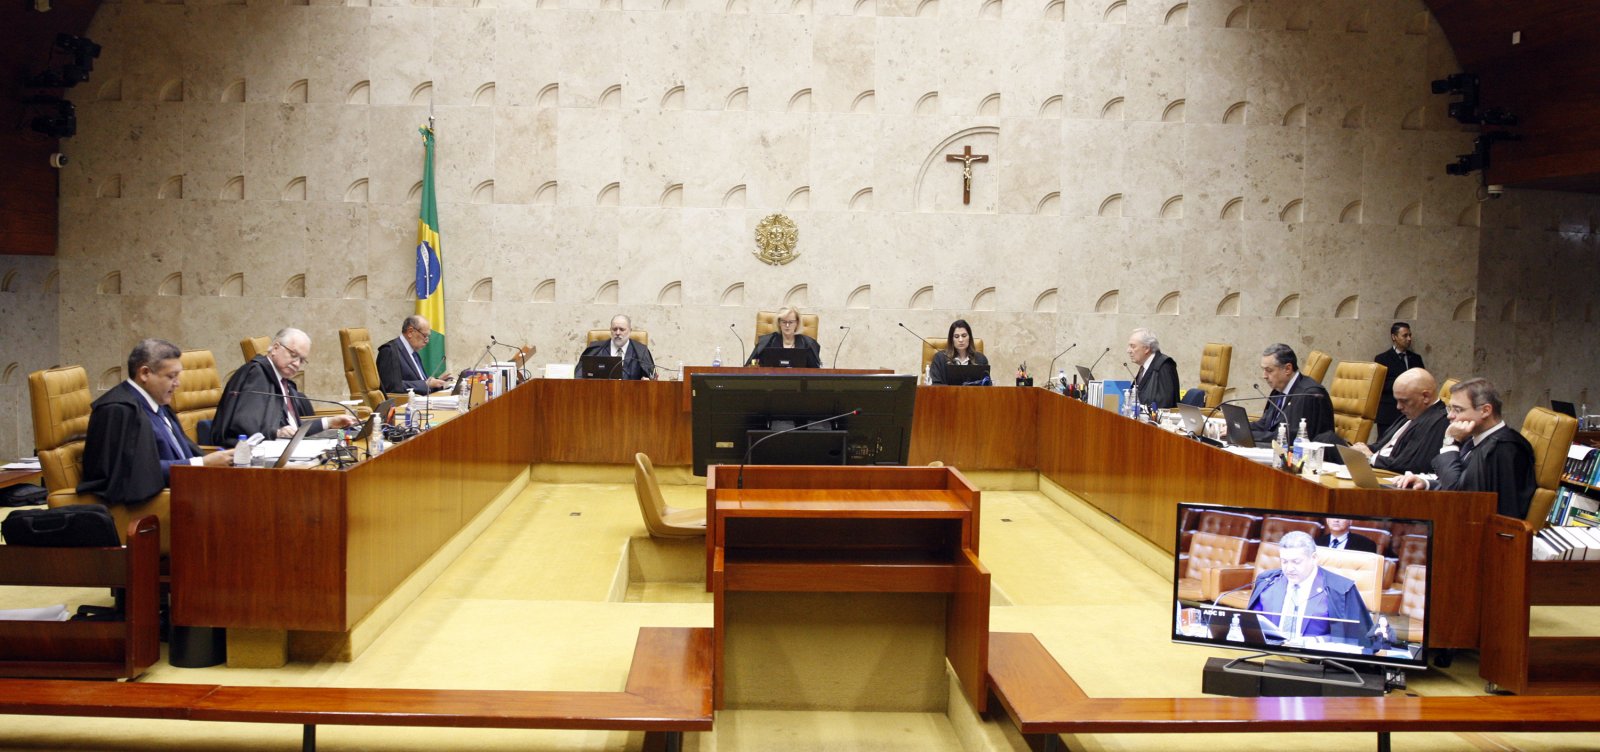 Cartilha autoritária: Bolsonaro cogita manobra para interferir no STF e põe em risco a democracia 